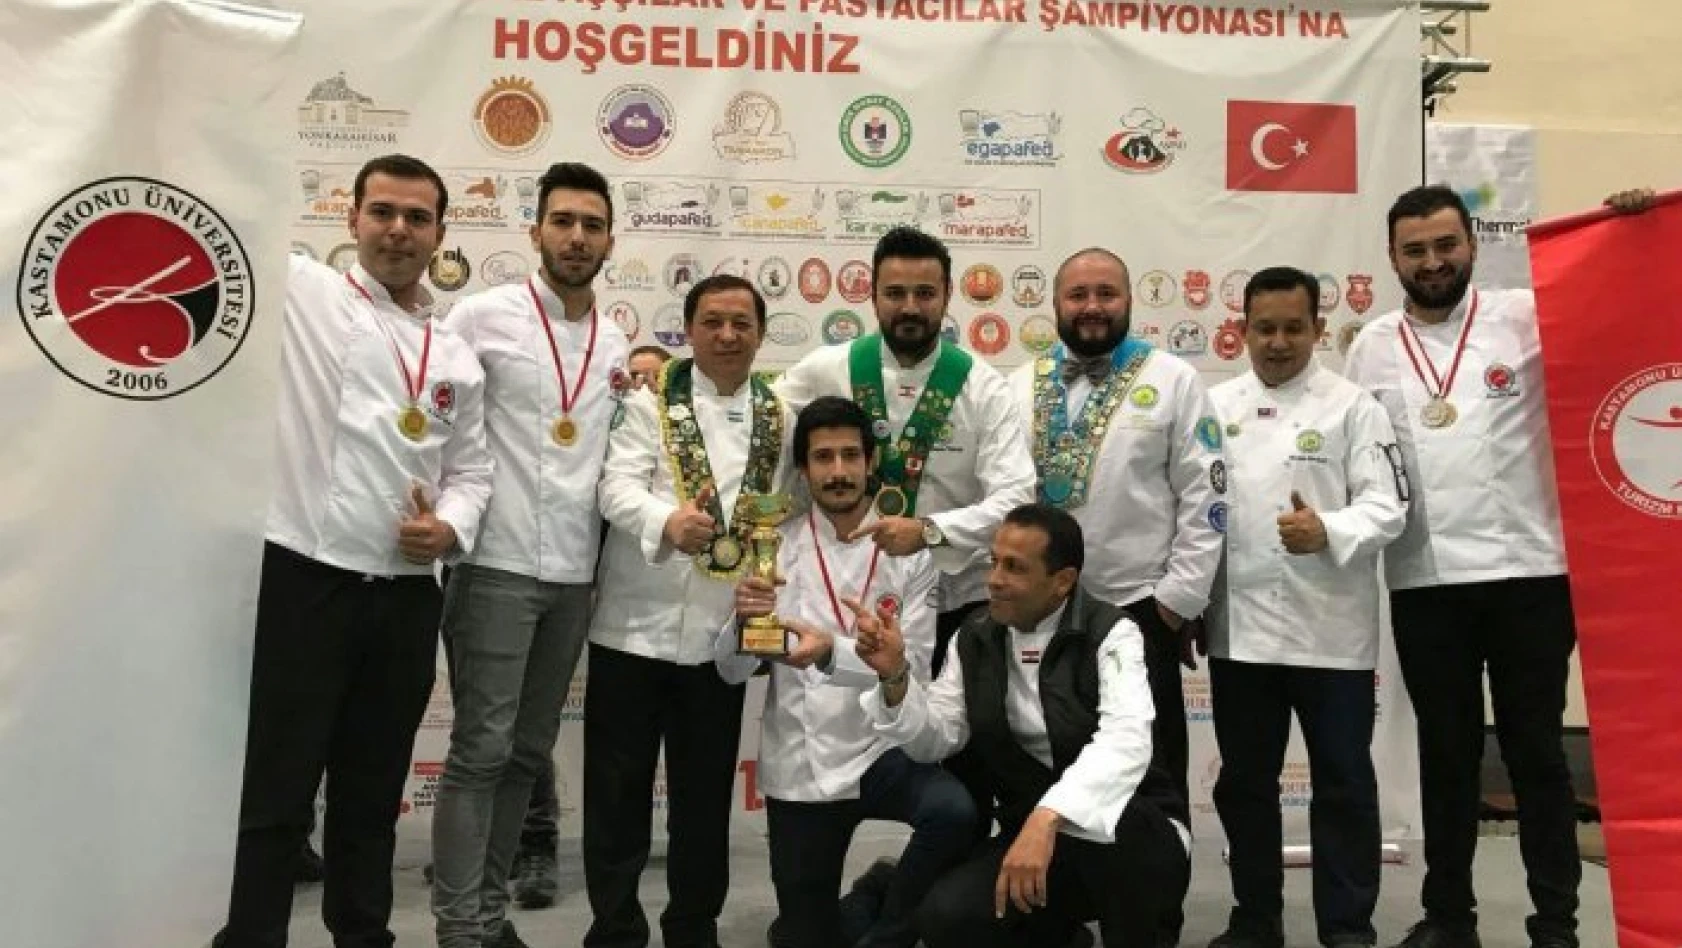 Ulusal Aşçılar ve Pastacılar Yarışmasında en iyi üniversite KÜ seçildi